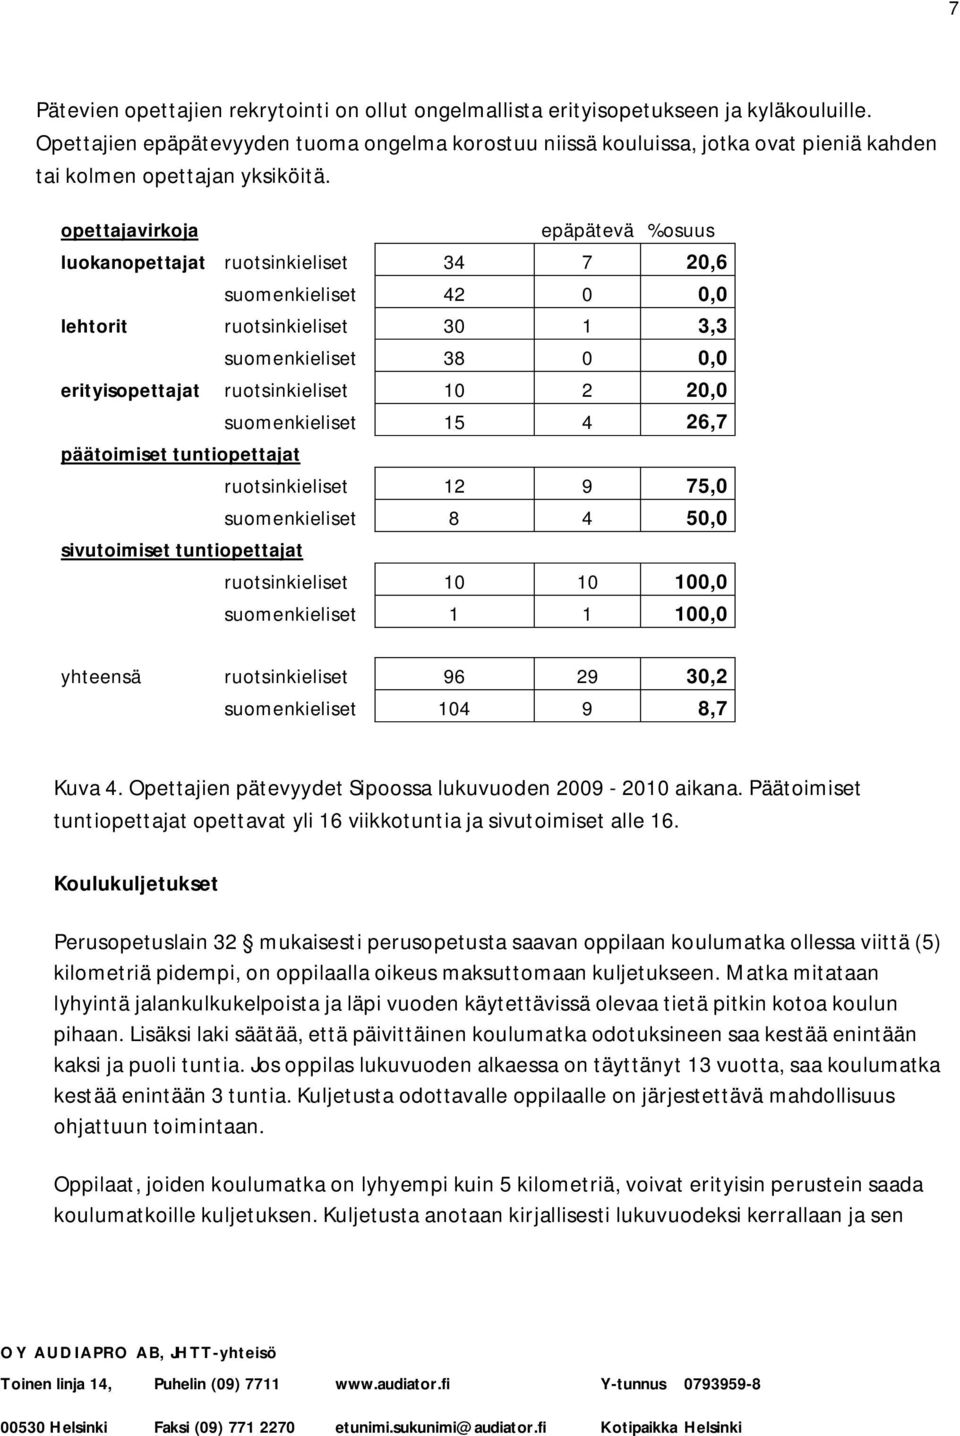 opettajavirkoja epäpätevä %osuus luokanopettajat ruotsinkieliset 34 7 20,6 suomenkieliset 42 0 0,0 lehtorit ruotsinkieliset 30 1 3,3 suomenkieliset 38 0 0,0 erityisopettajat ruotsinkieliset 10 2 20,0